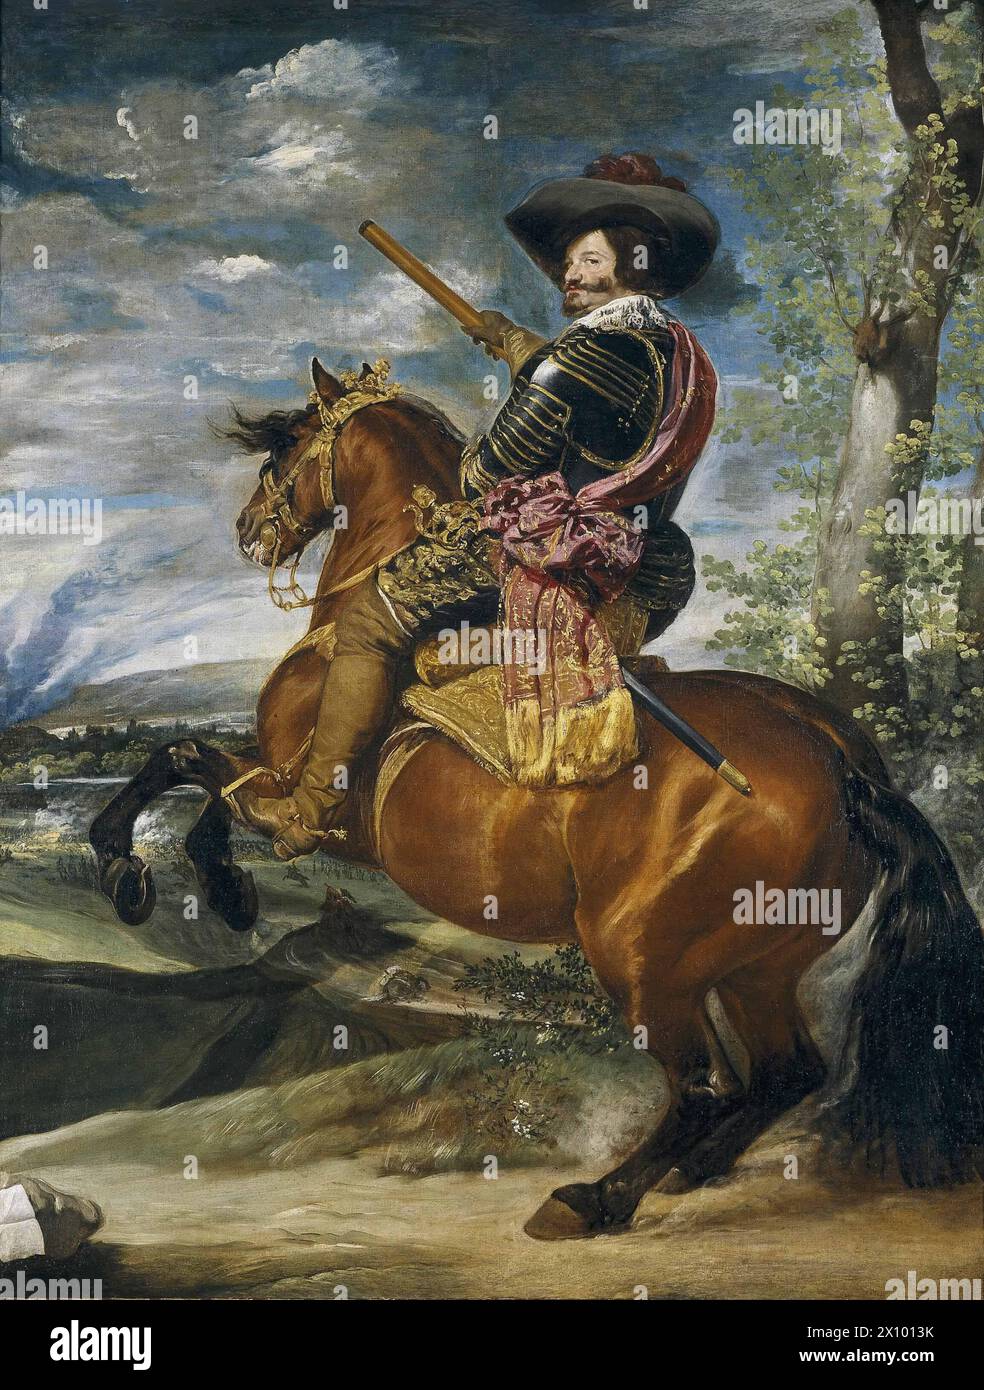 Gaspar de Guzmán, Comte-Duc d'Olivares, à cheval (espagnol : Gaspar de Guzmán, condé-duque de Olivares, a caballo) est une huile sur toile peinte par le peintre espagnol Diego Velázquez, réalisée vers l'an 1636 Portrait équestre du Comte-Duc d'Olivares Banque D'Images